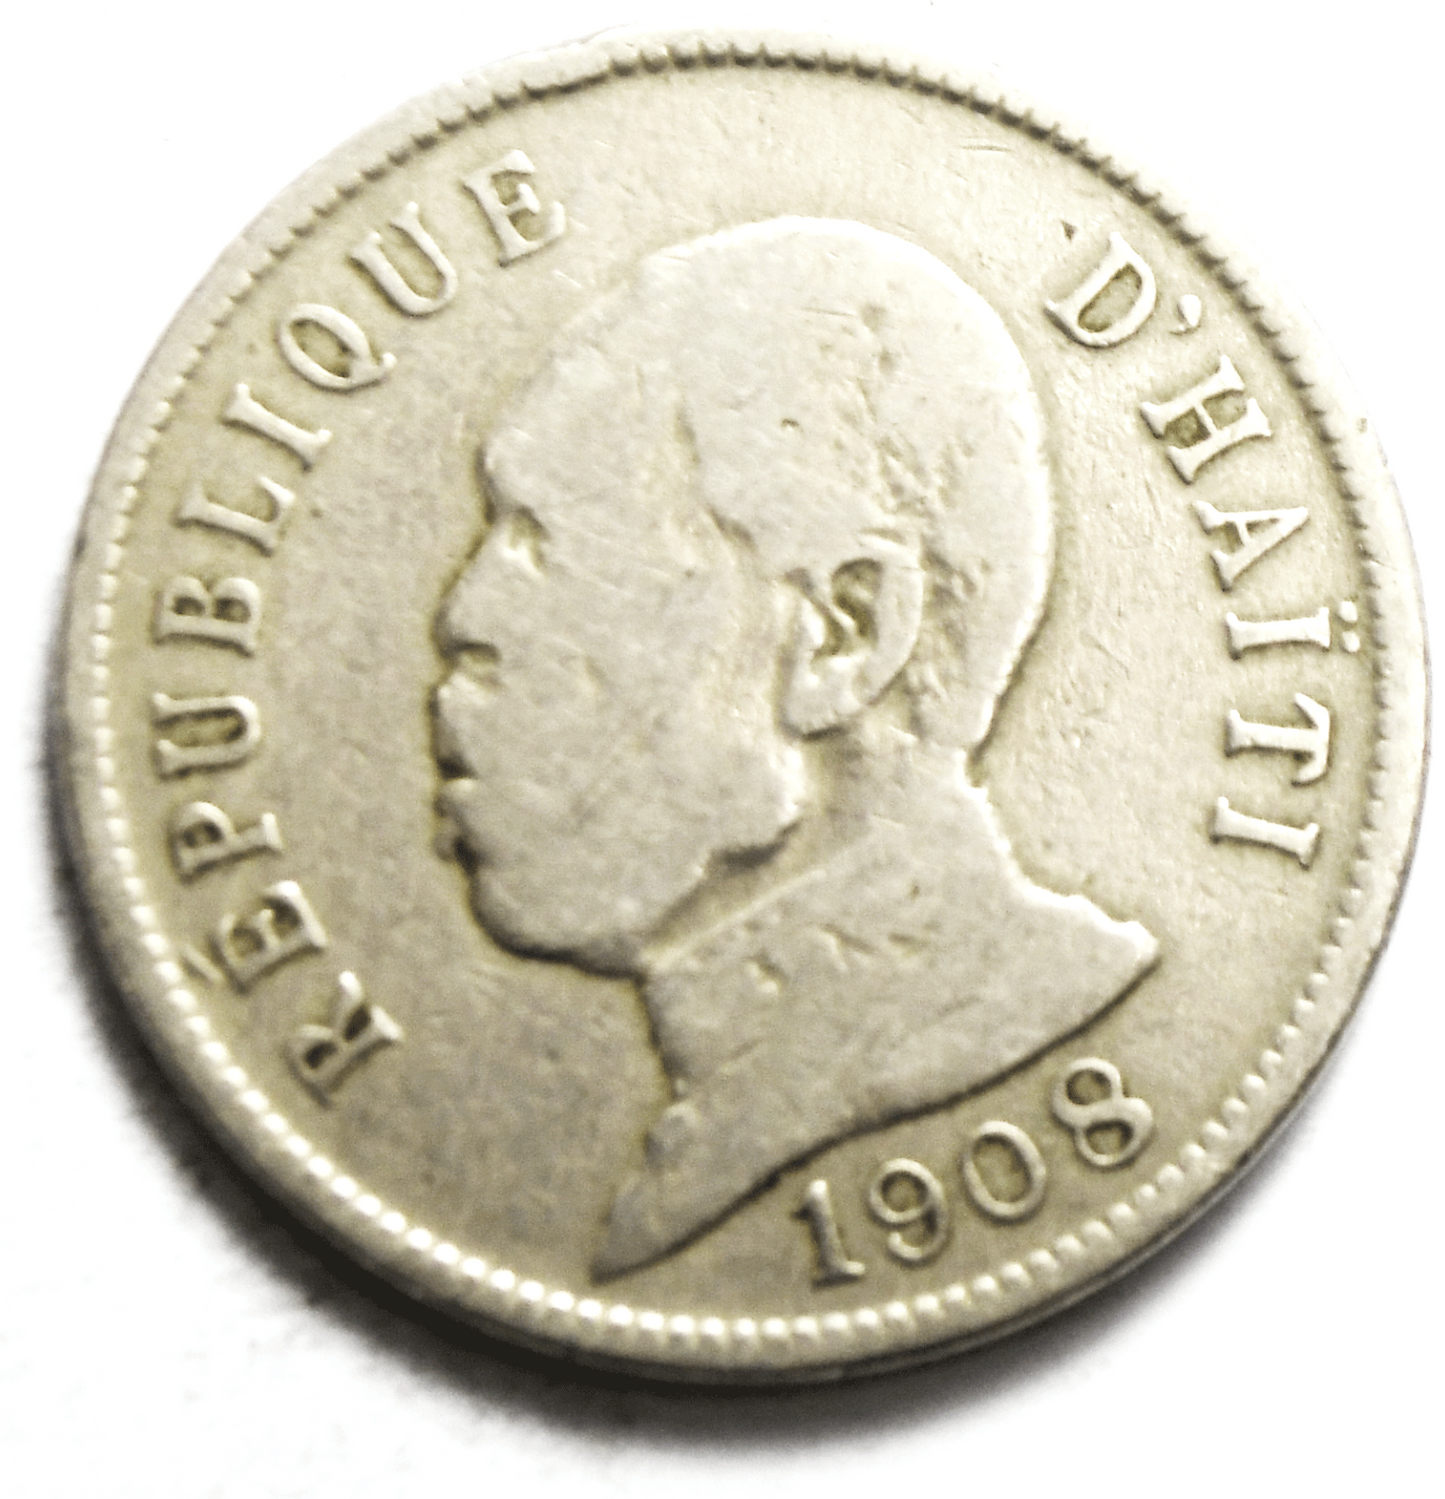 1908 Haiti 50 Centimes KM# 56 Copper Nickel Coin